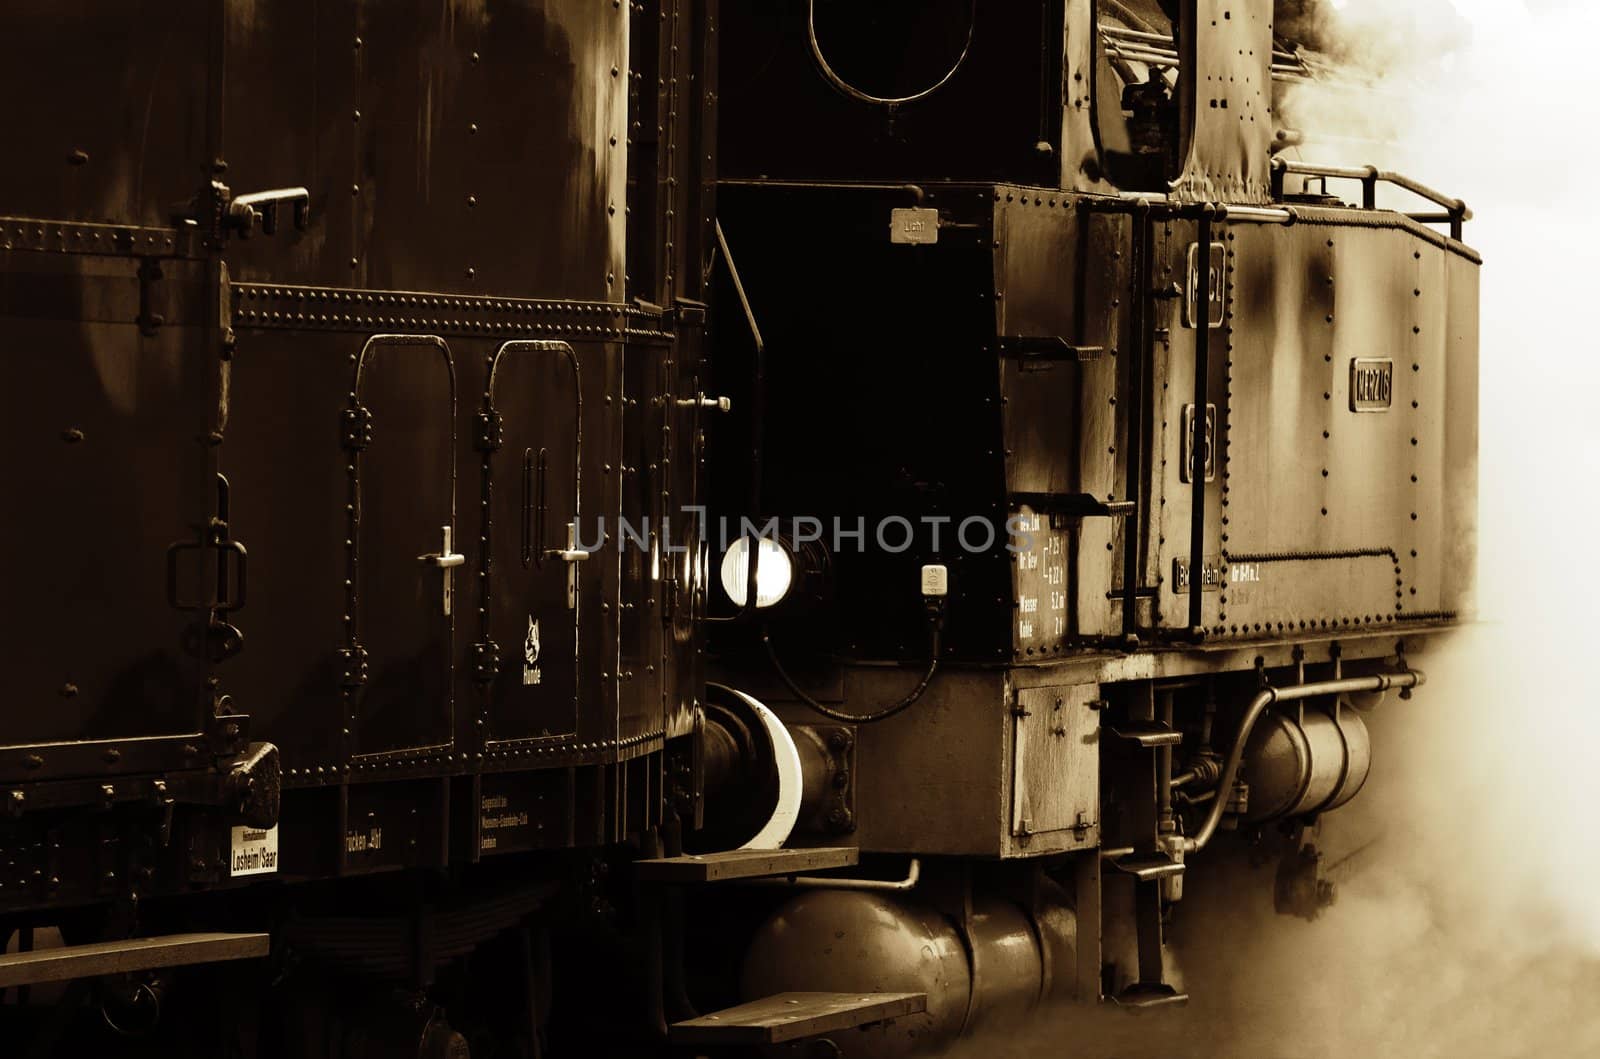 a steam locomotive